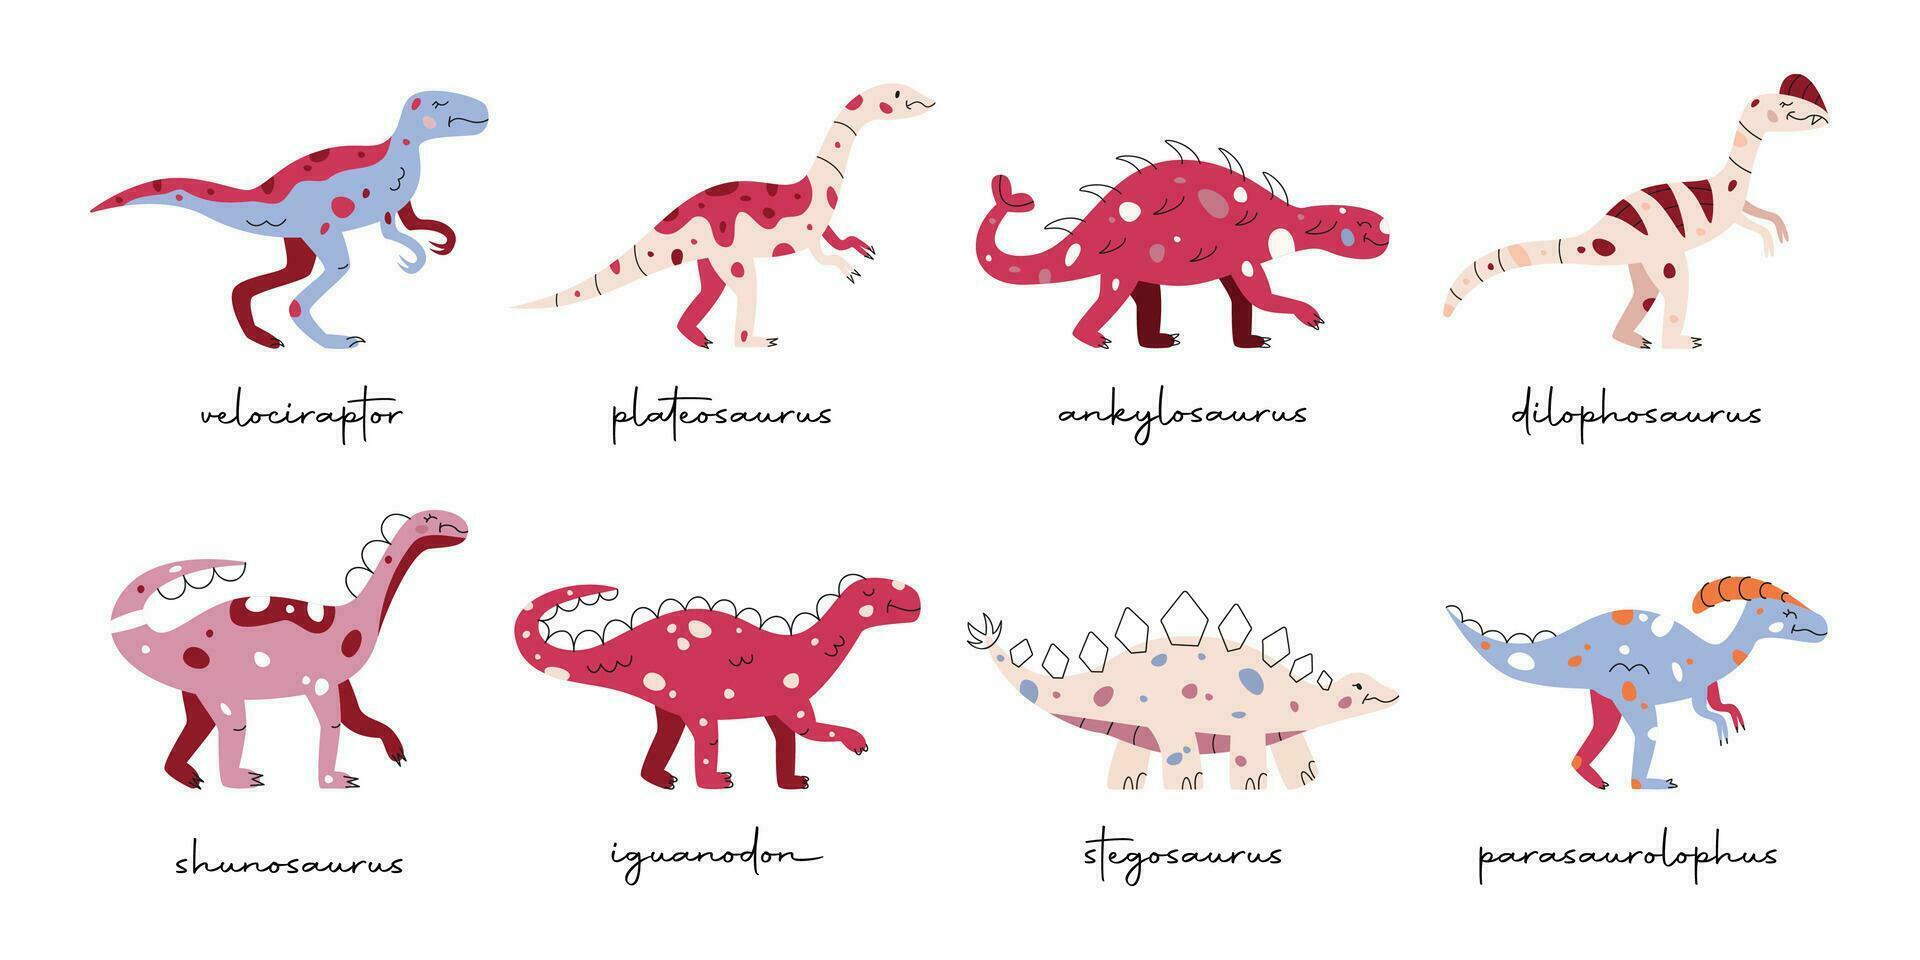 plano mano dibujado vector ilustraciones de dinosaurios